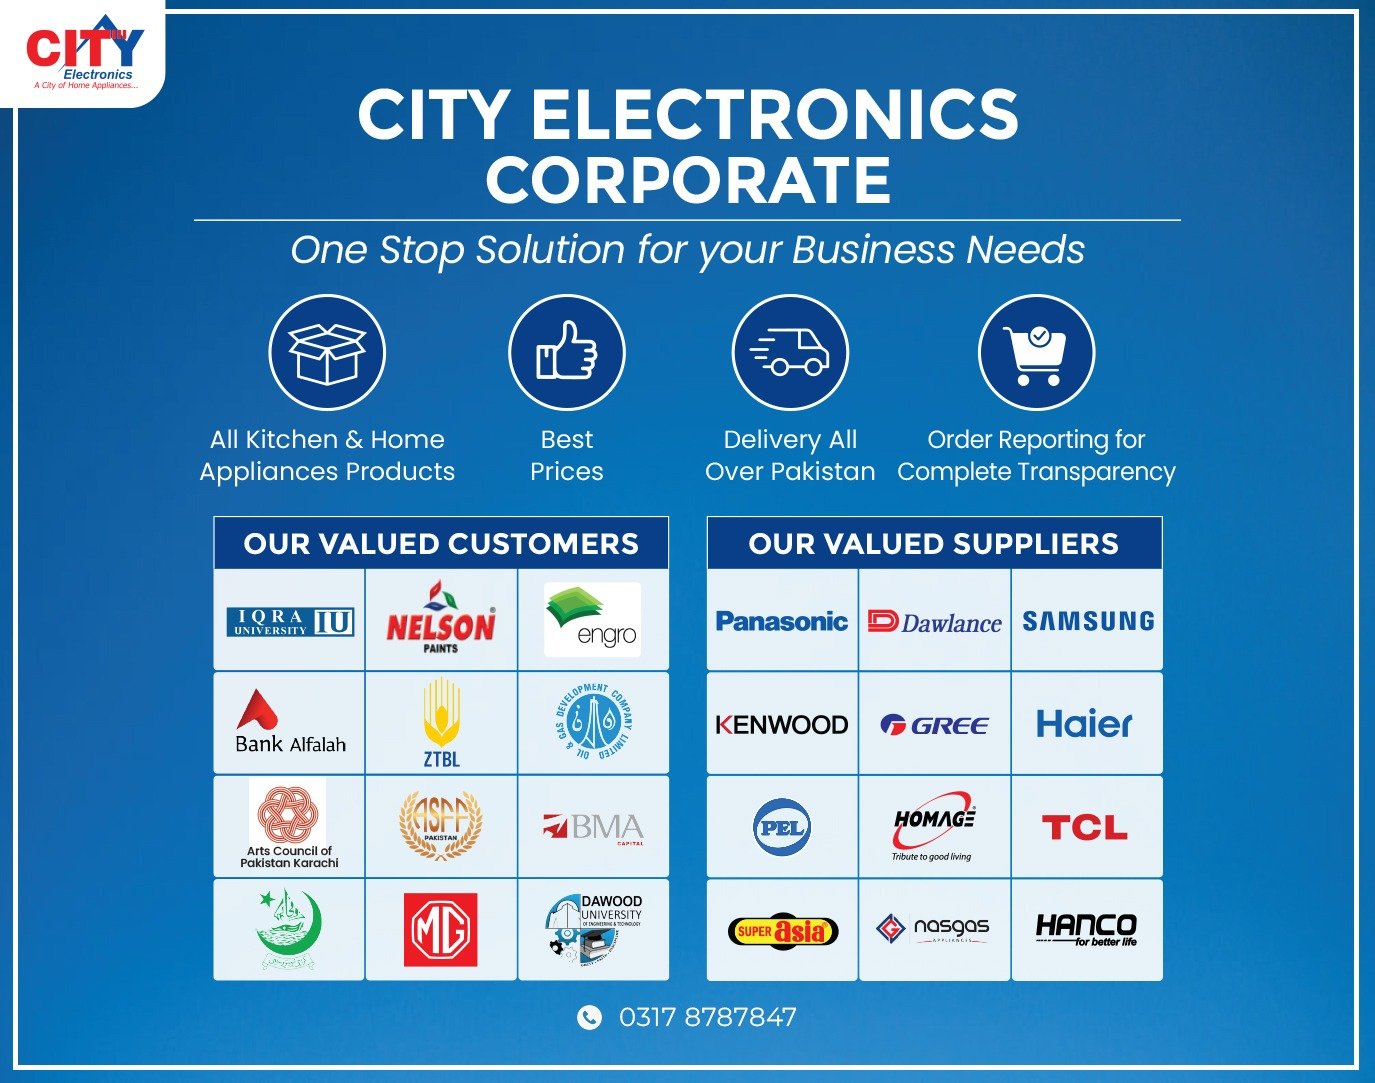 Home Of Electronics - City Electronics